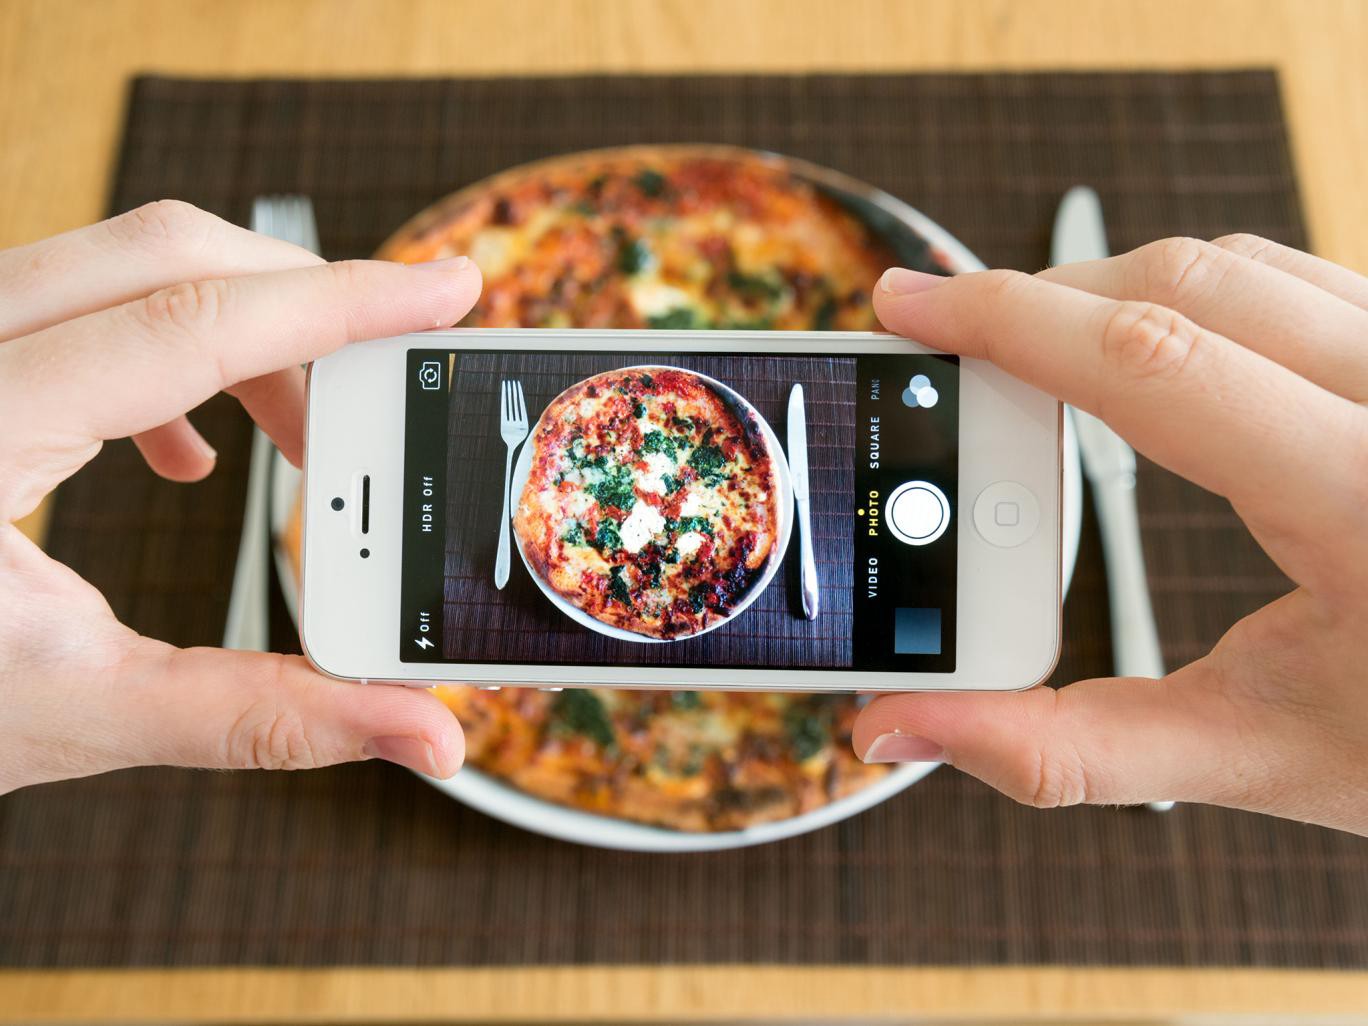 Los universitarios eligen los teléfonos móviles por encima de su comida favorita